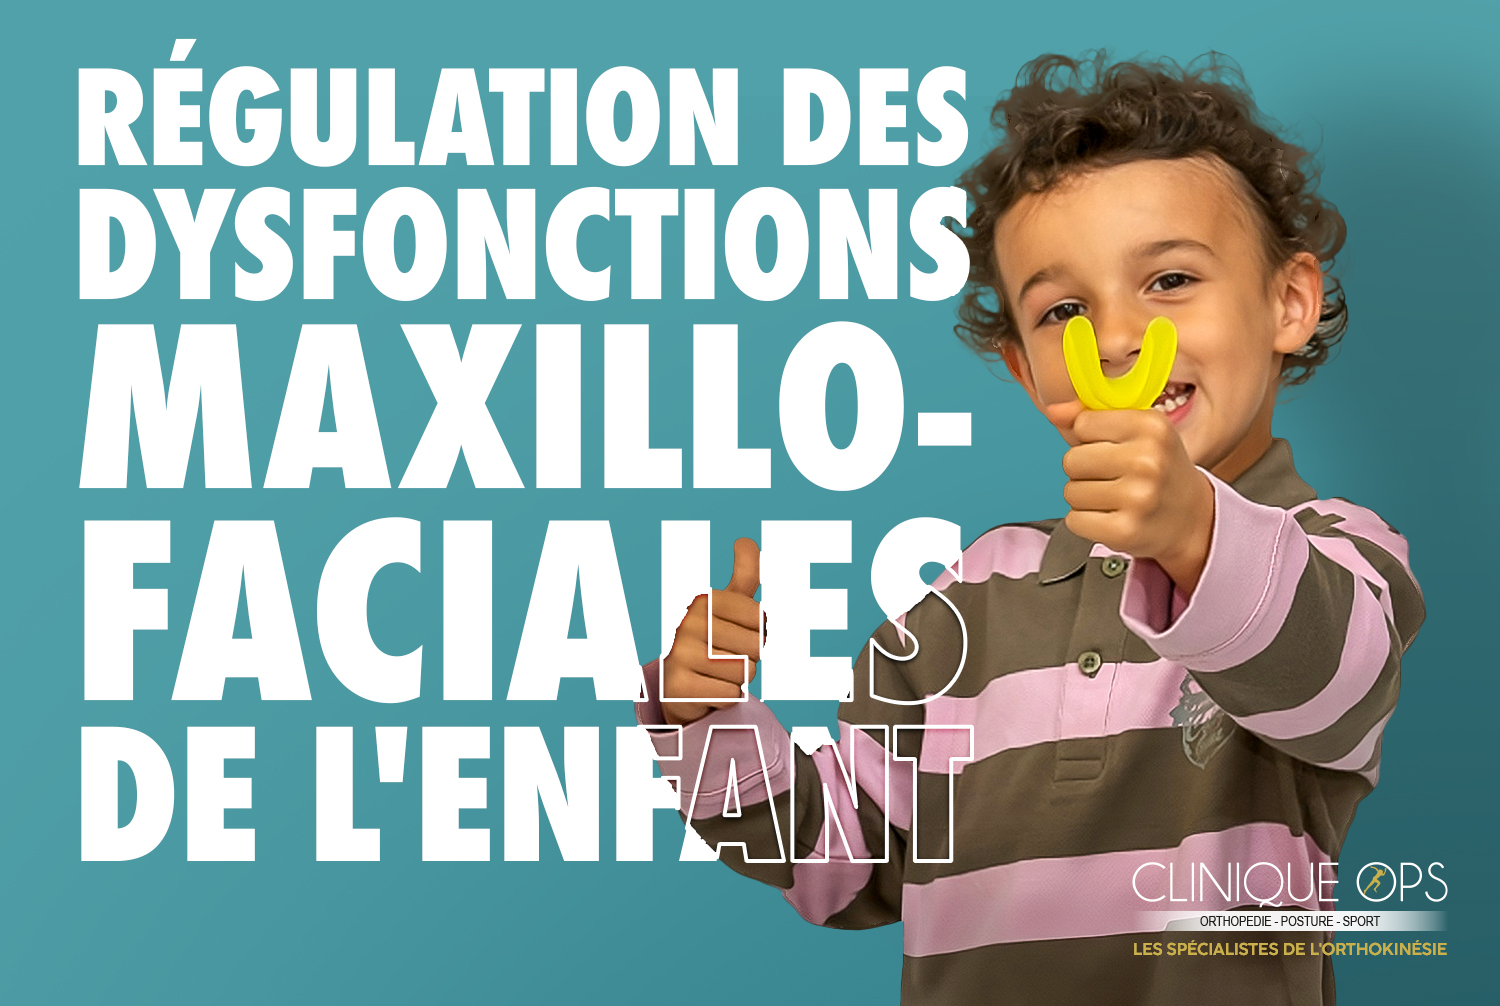 RÉGULATION DES DYSFONCTIONS MAXILLO-FACIALES DE L’ENFANT